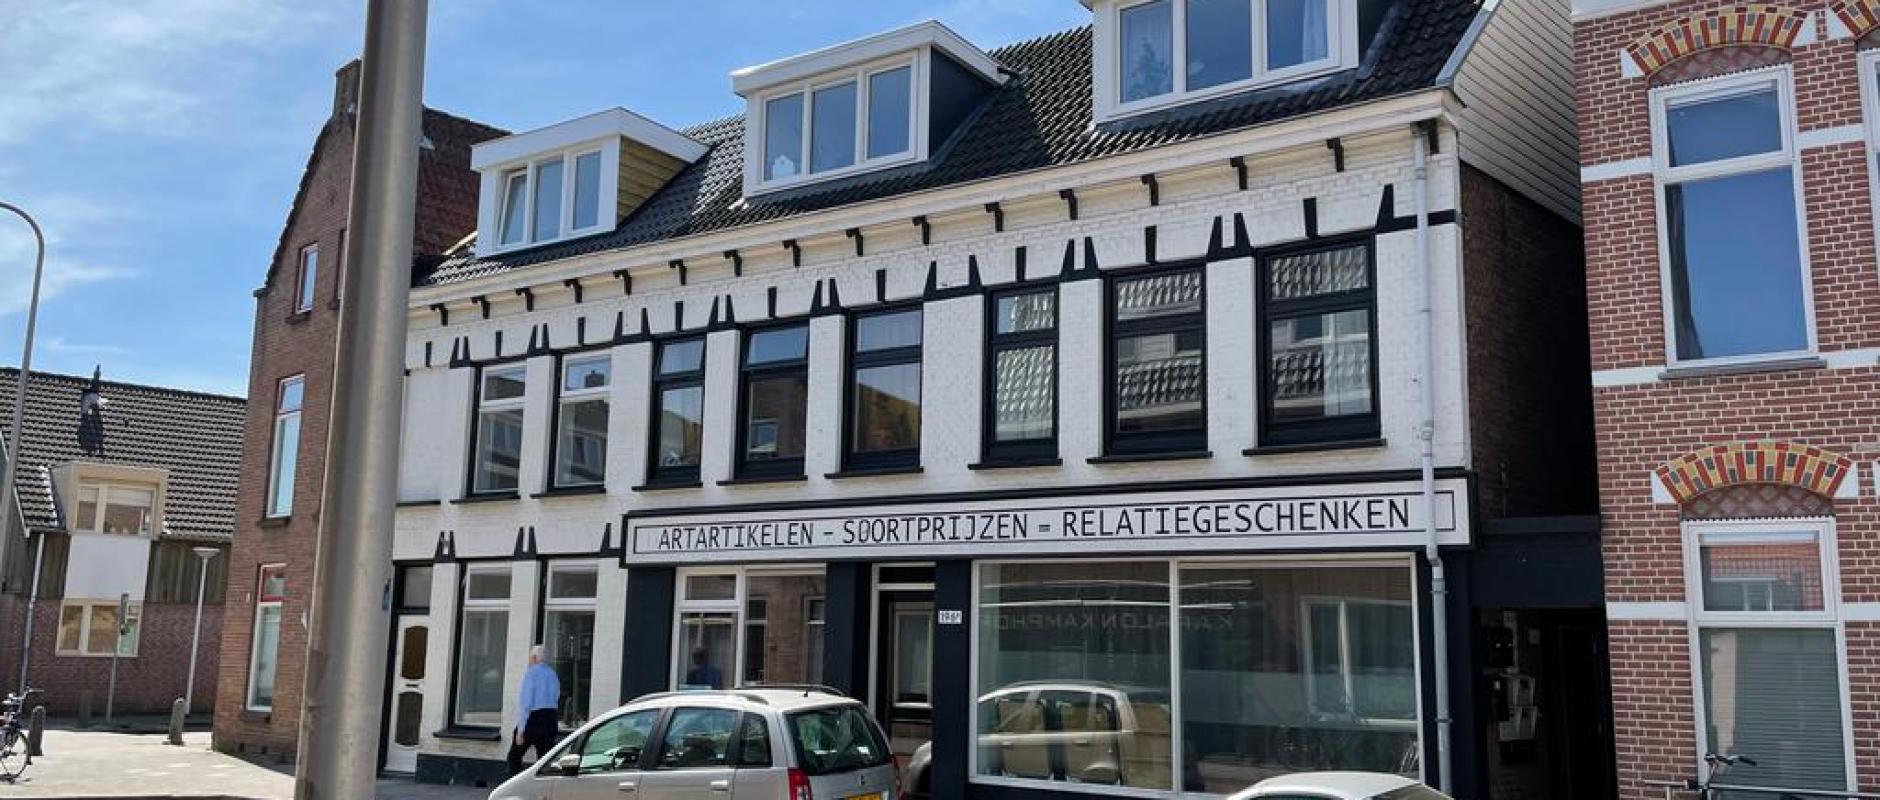 Woning te koop aan de Assendorperstraat 194A te Zwolle